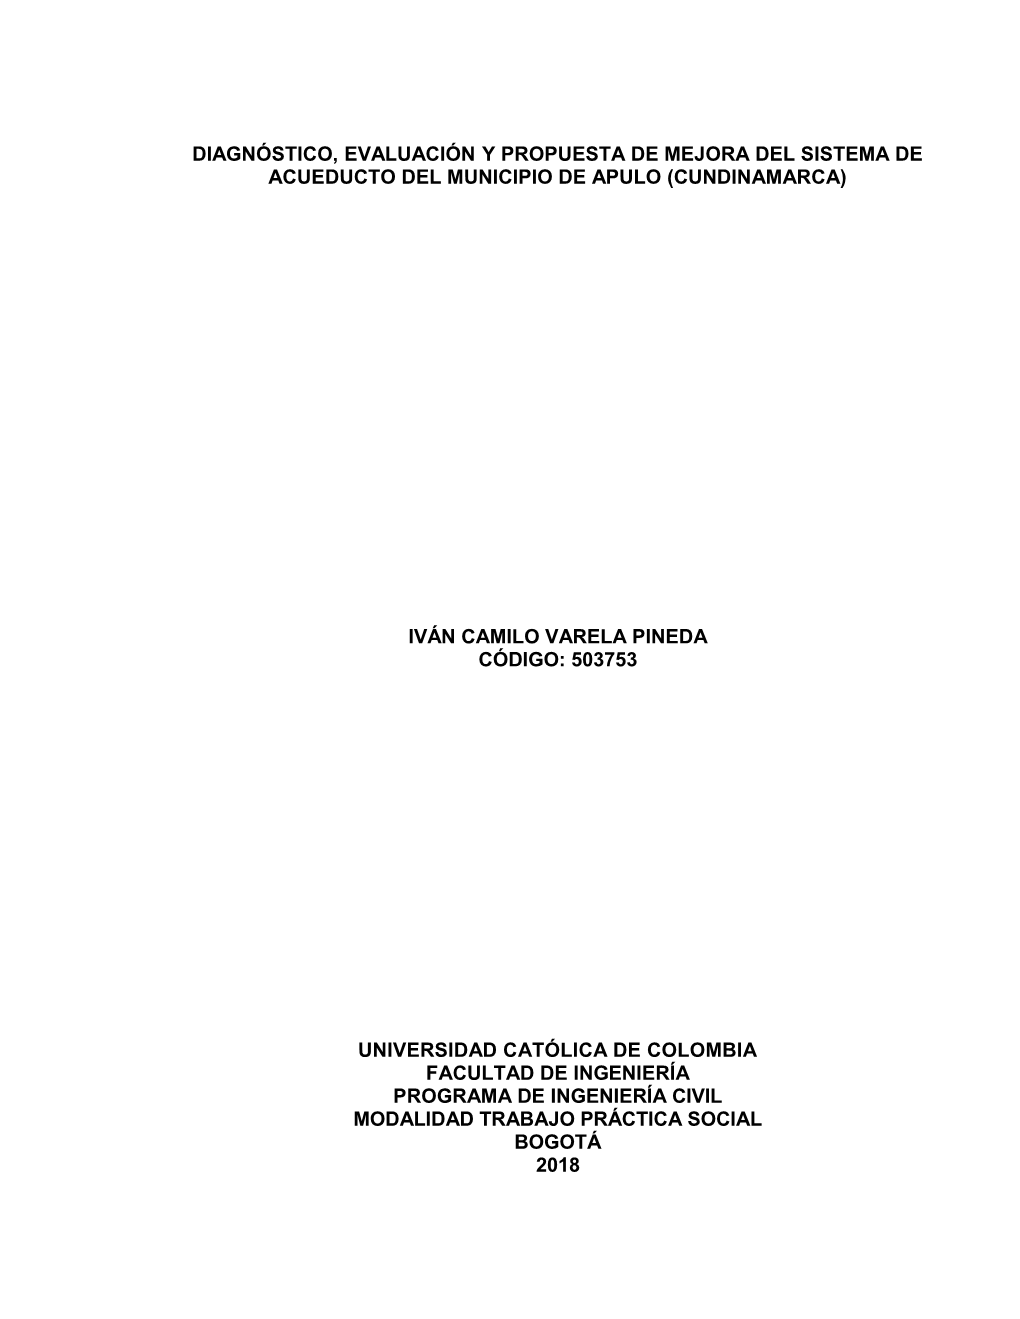 Diagnóstico, Evaluación Y Propuesta De Mejora Del Sistema De Acueducto Del Municipio De Apulo (Cundinamarca)